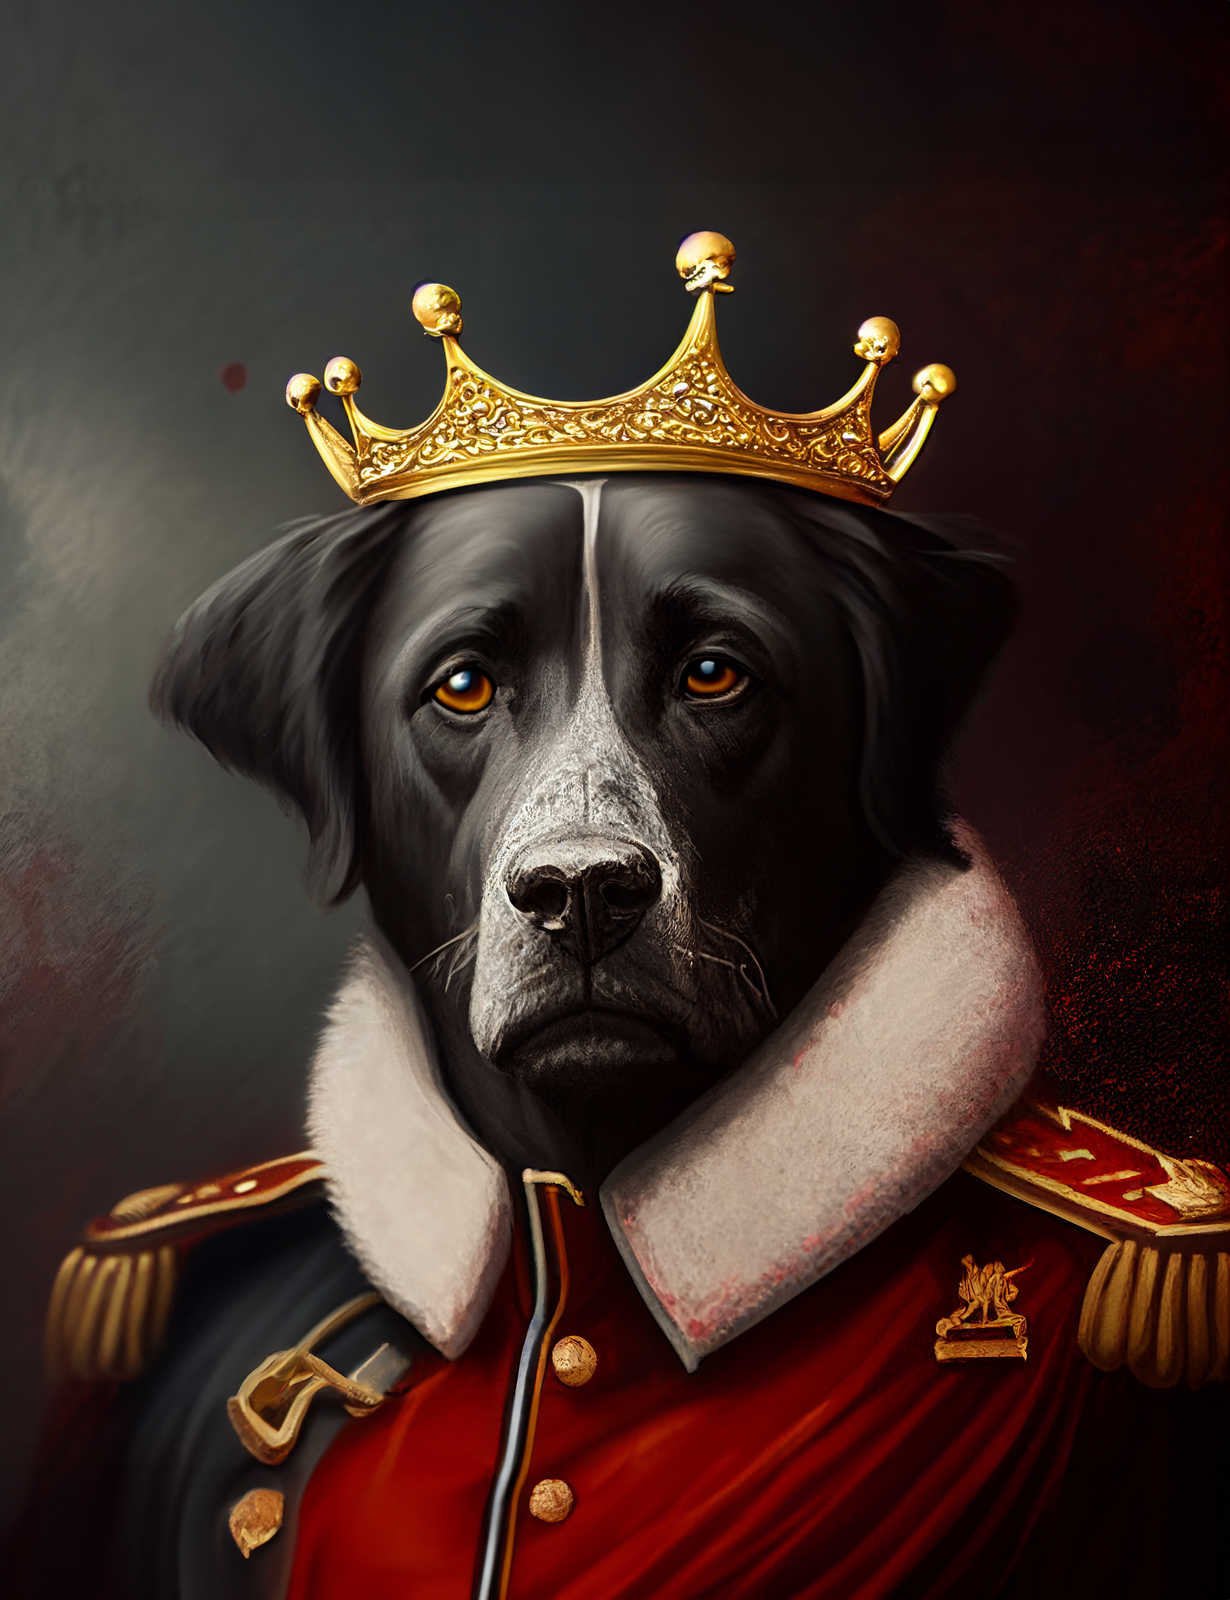             KI Canvas painting »Royal Dog« - 60 cm x 90 cm
        